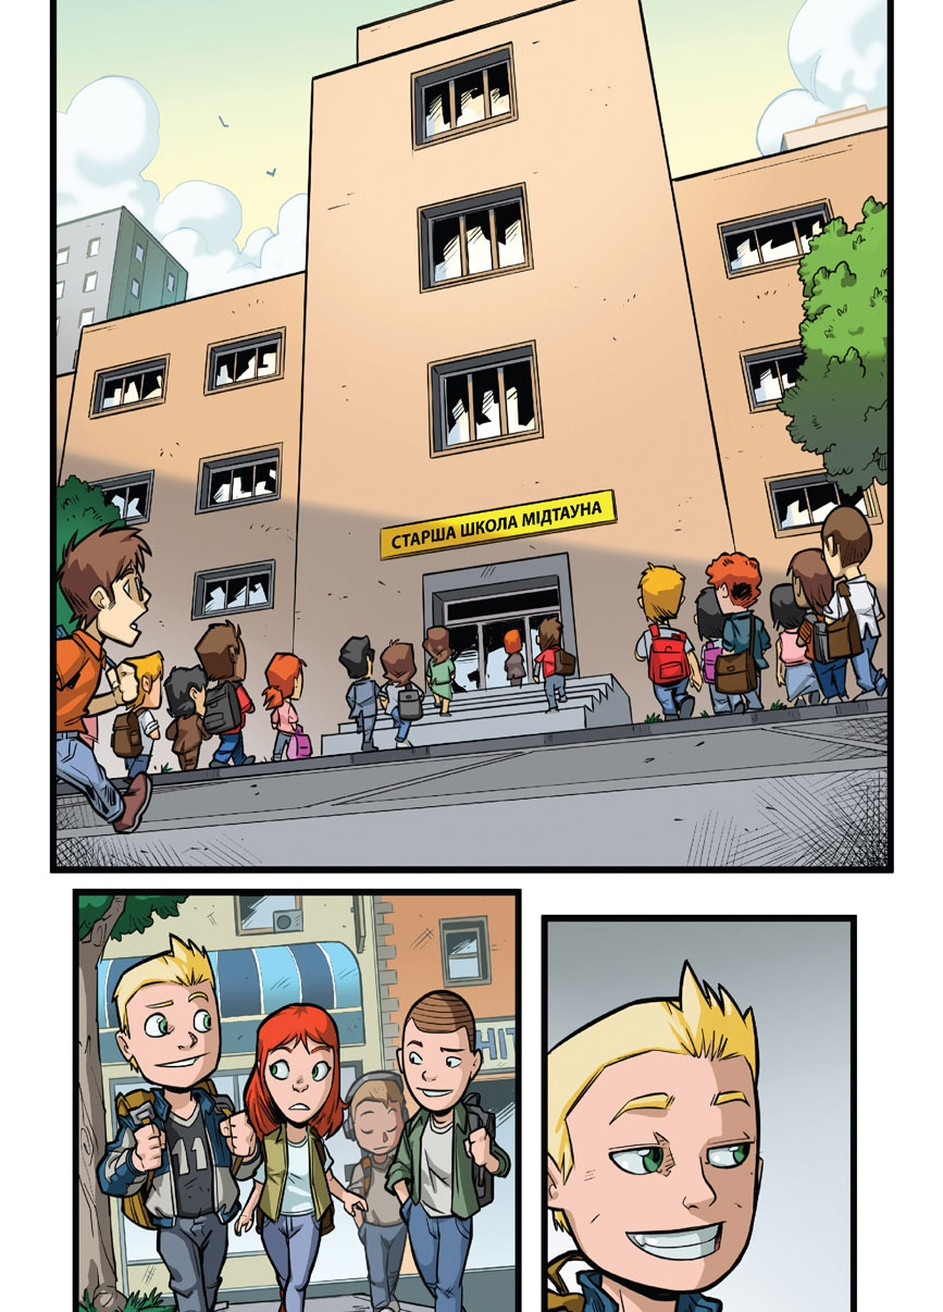 Комикс под названием Супергеройские приключения. Первый день в школе No Brand (257038647)